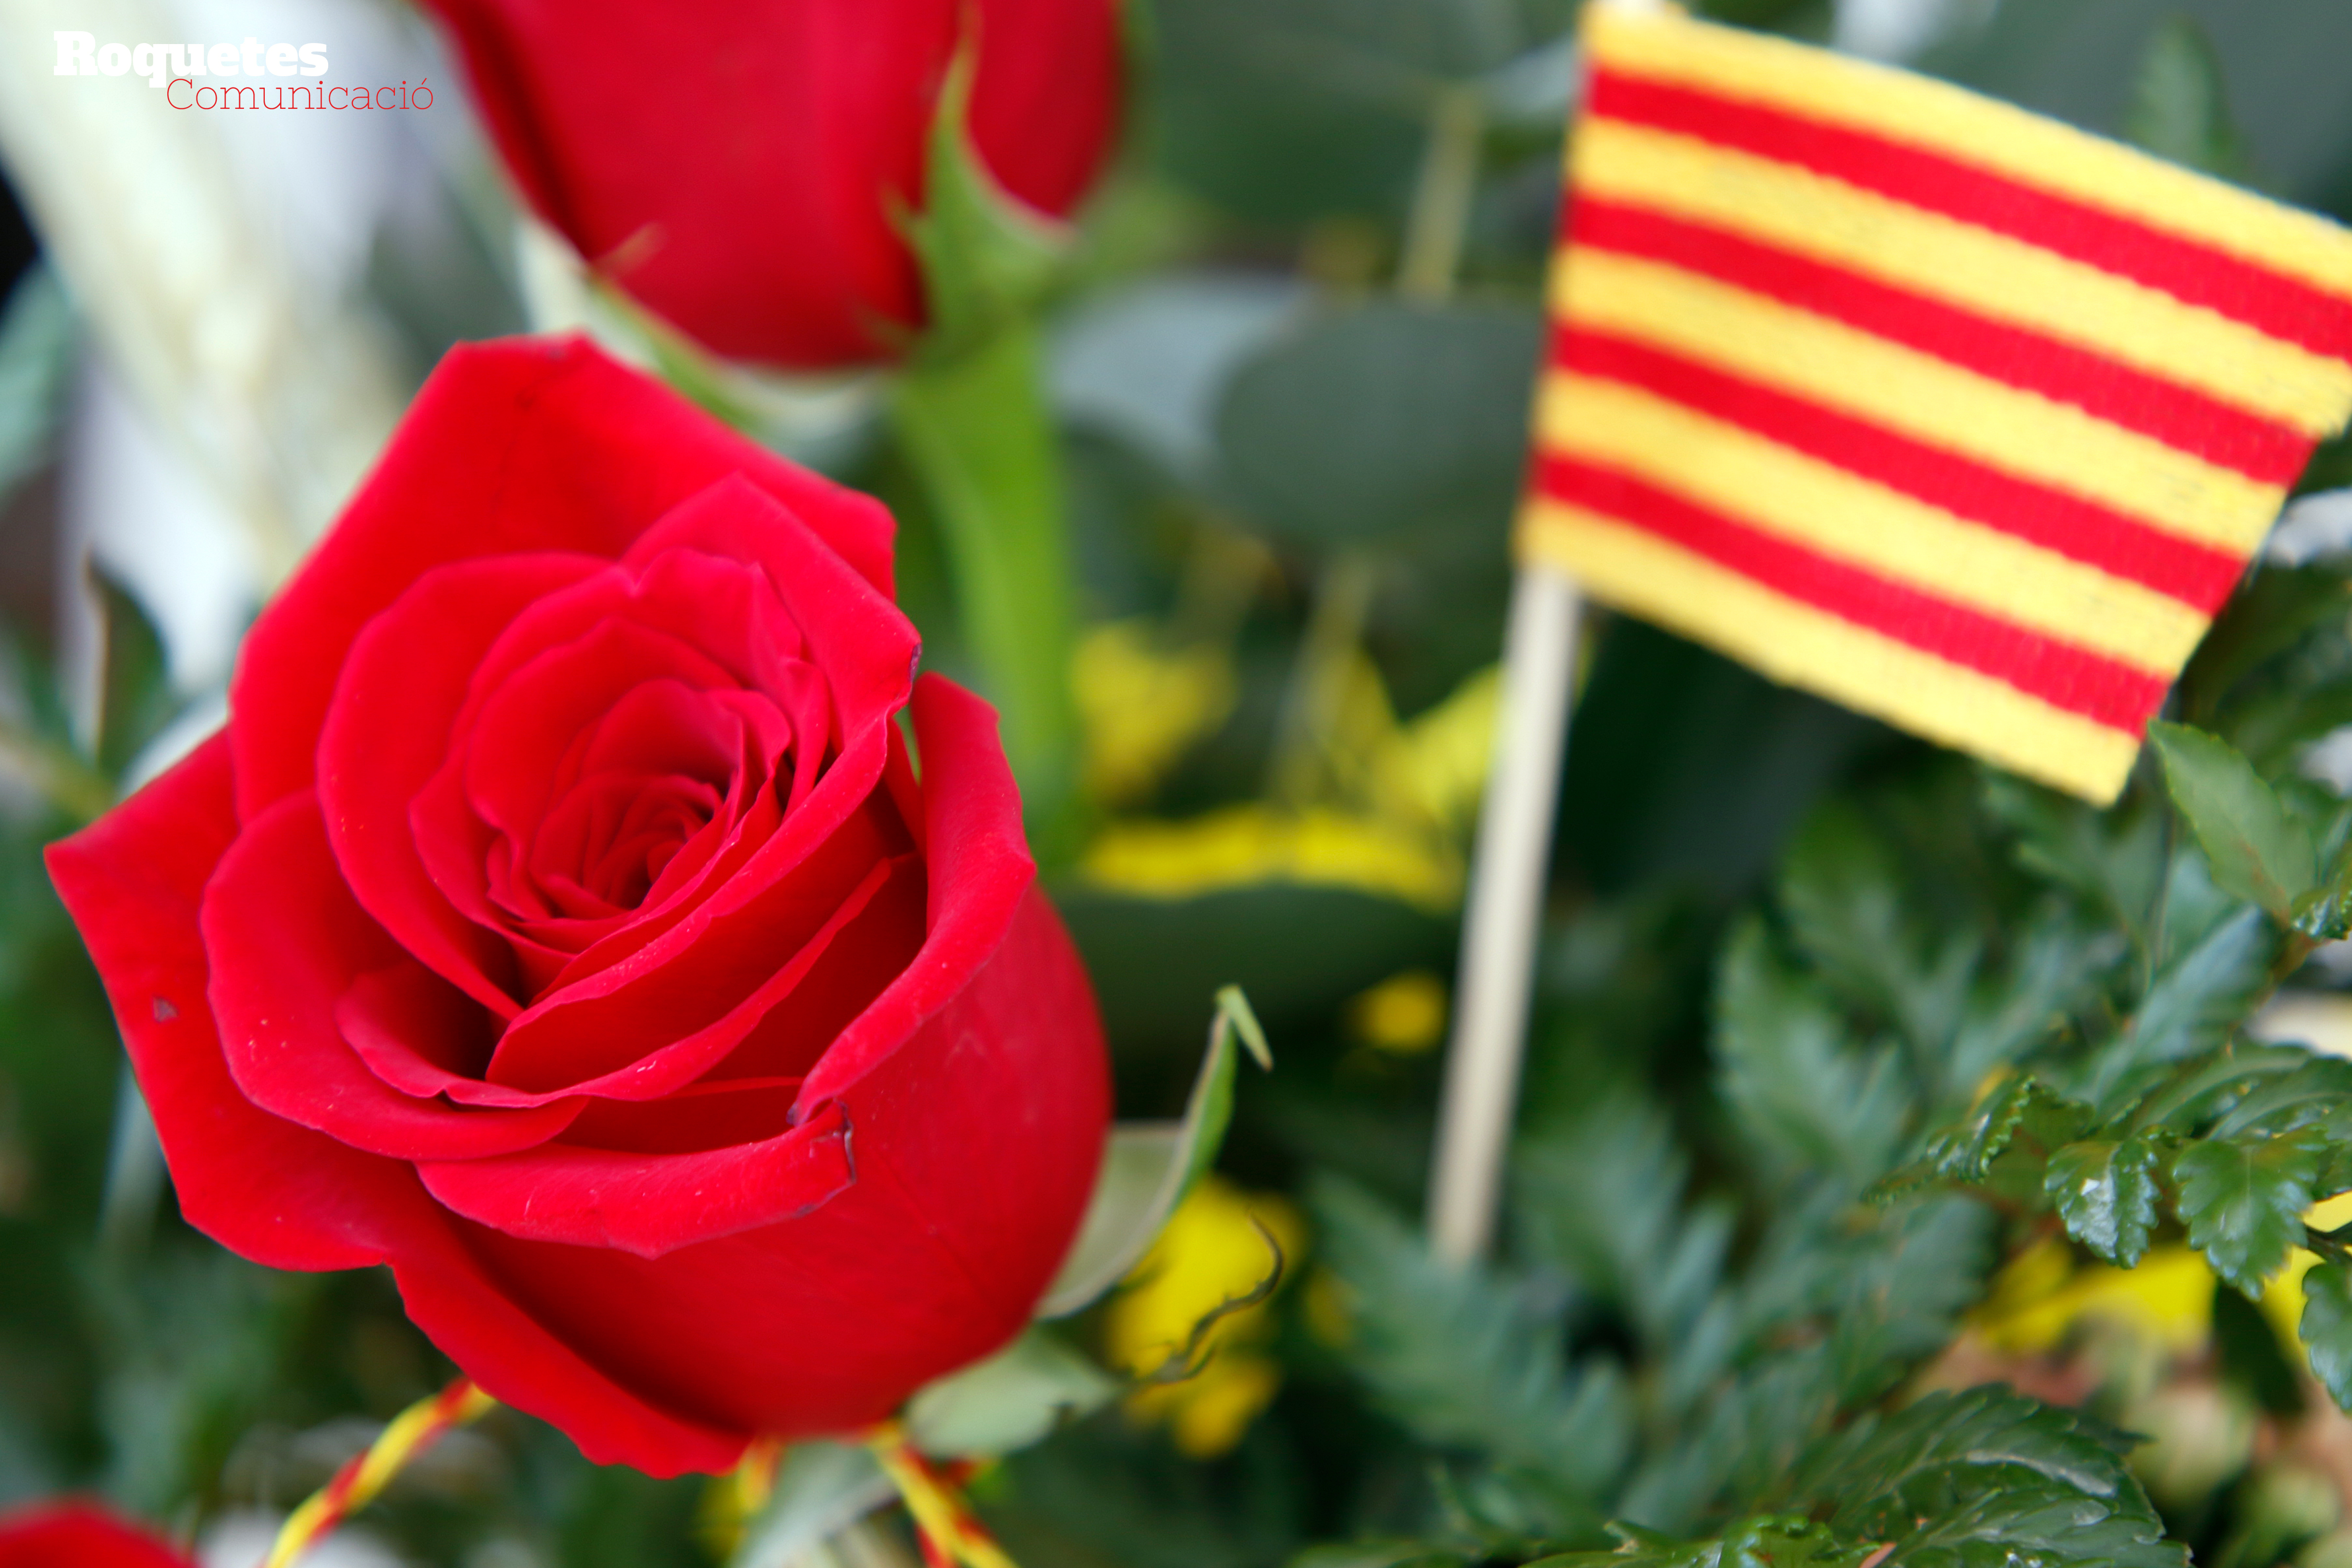 Roquetes Comunicació Festa de Sant Jordi a Roquetes. 23 d’abril de 2019